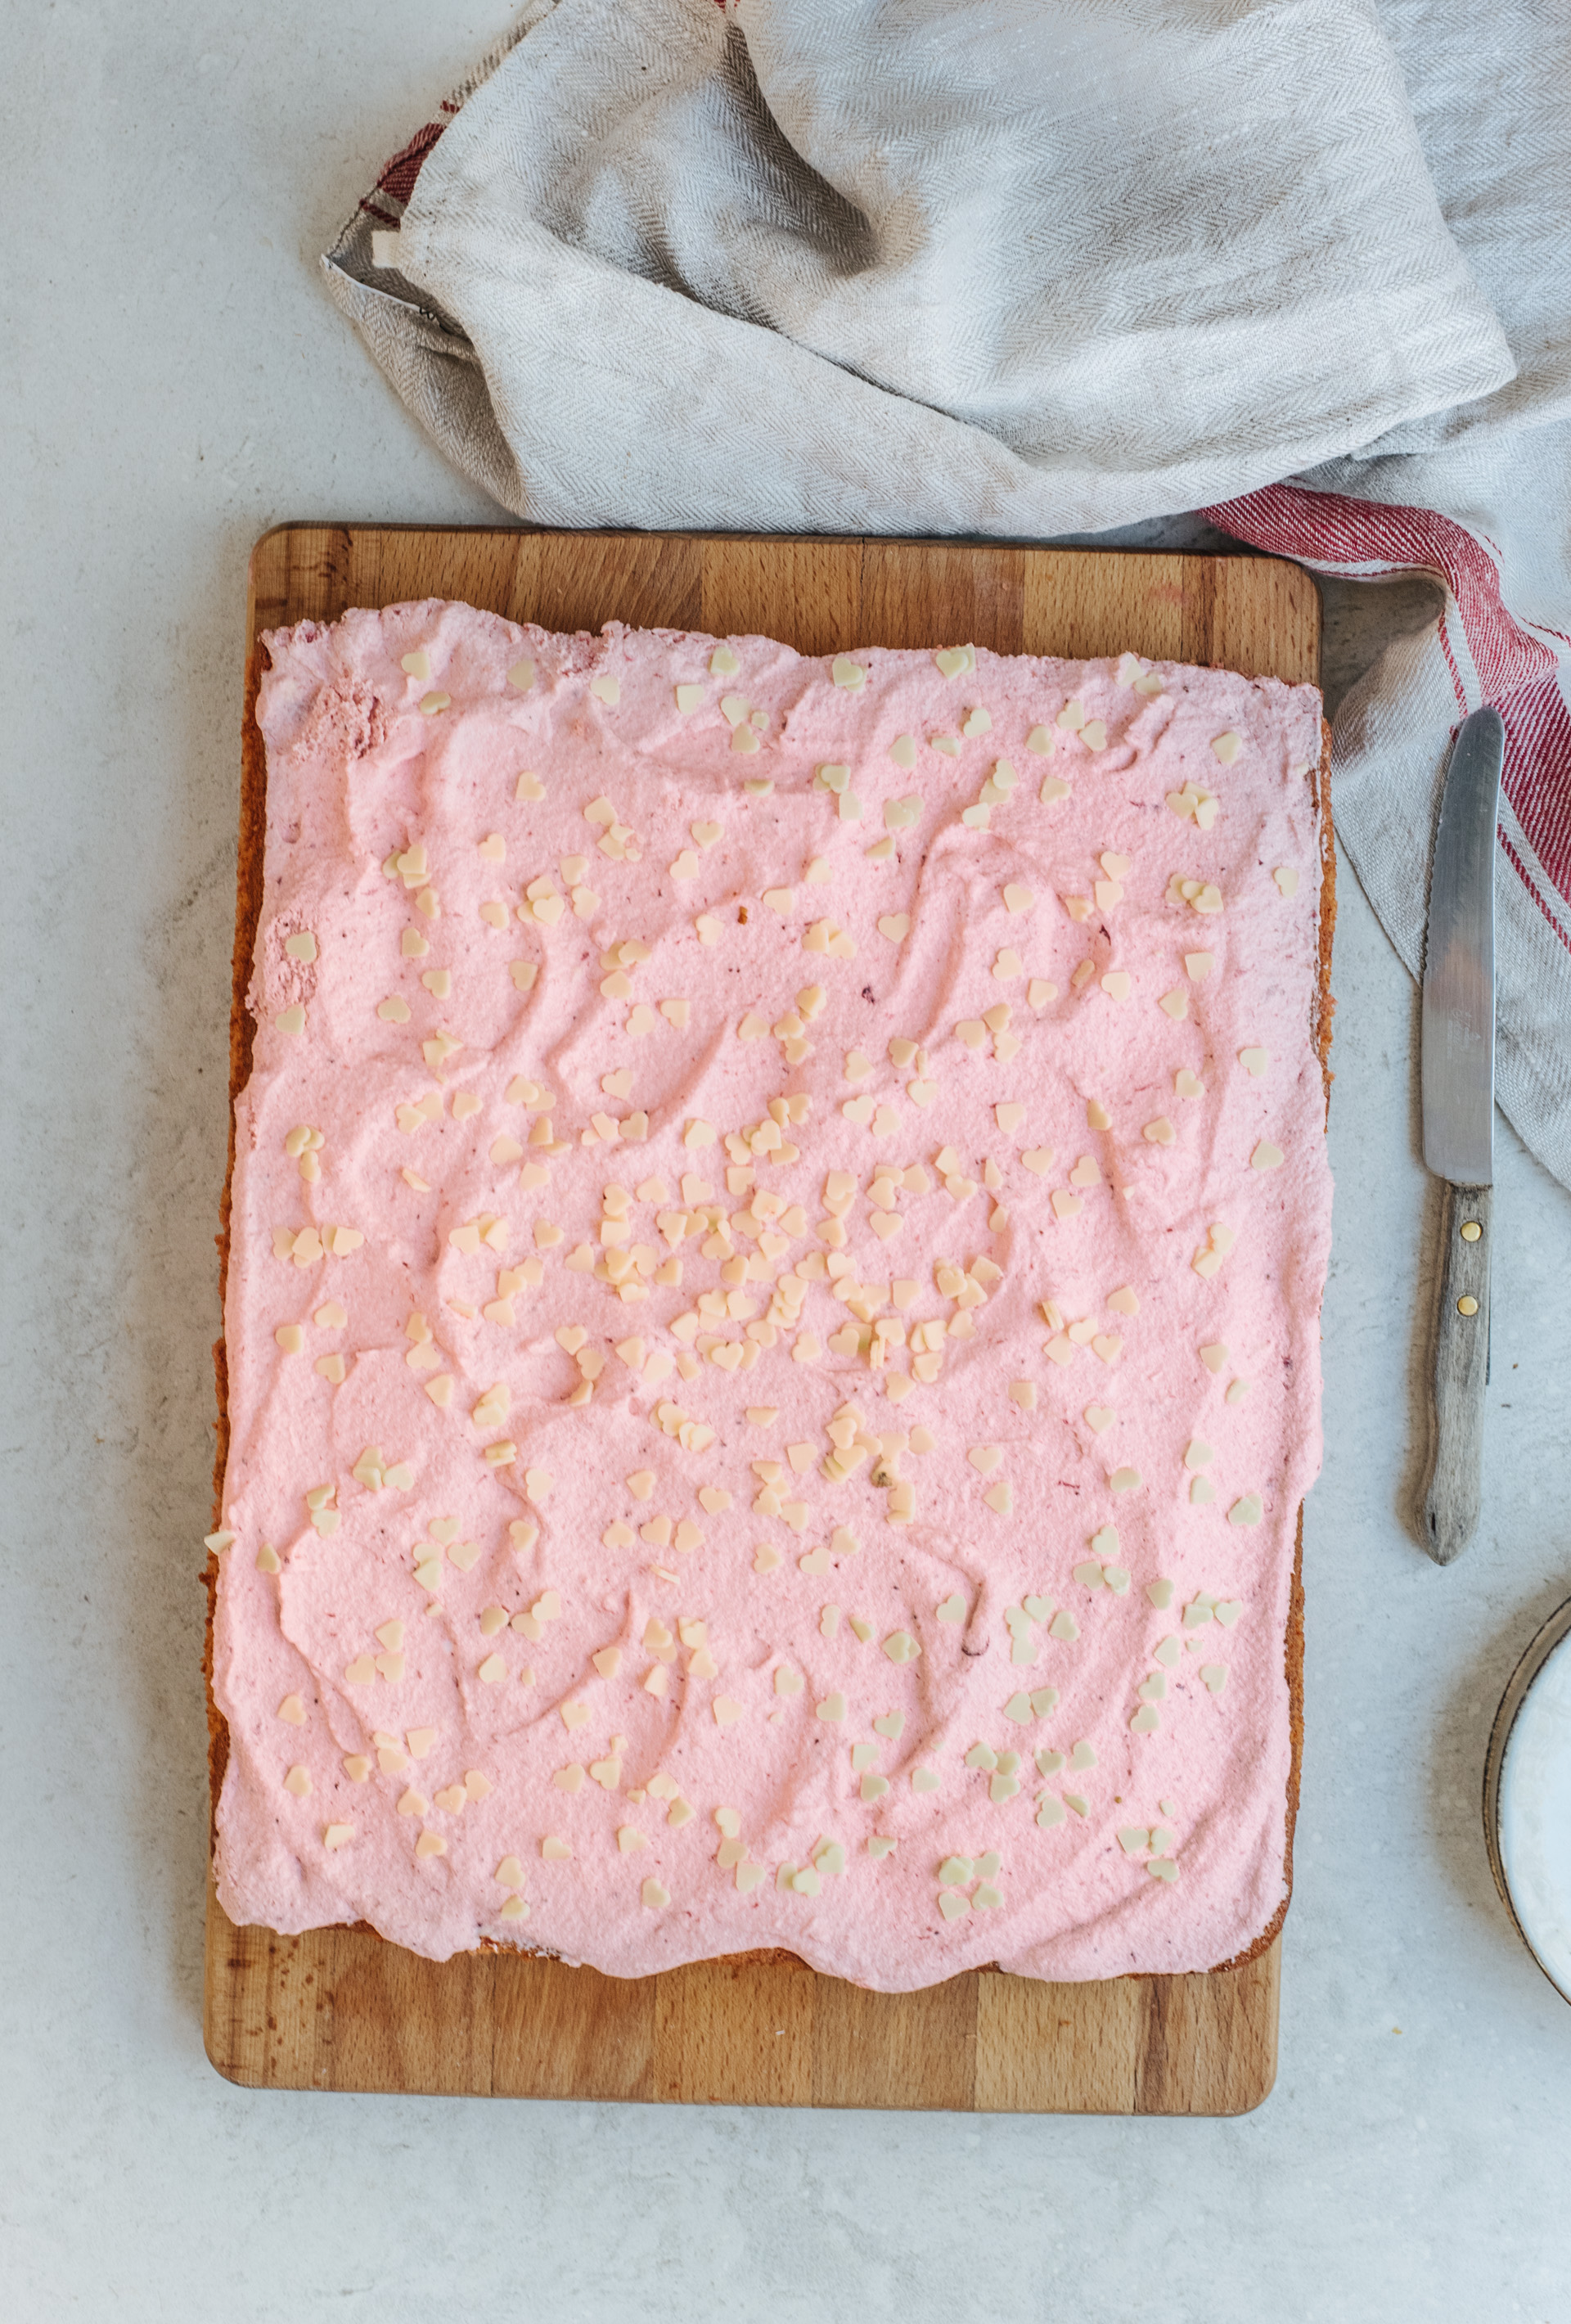 Verwonderend Roze aardbeien taart met merengue frosting (MAKKELIJK RECEPT) | A PD-96